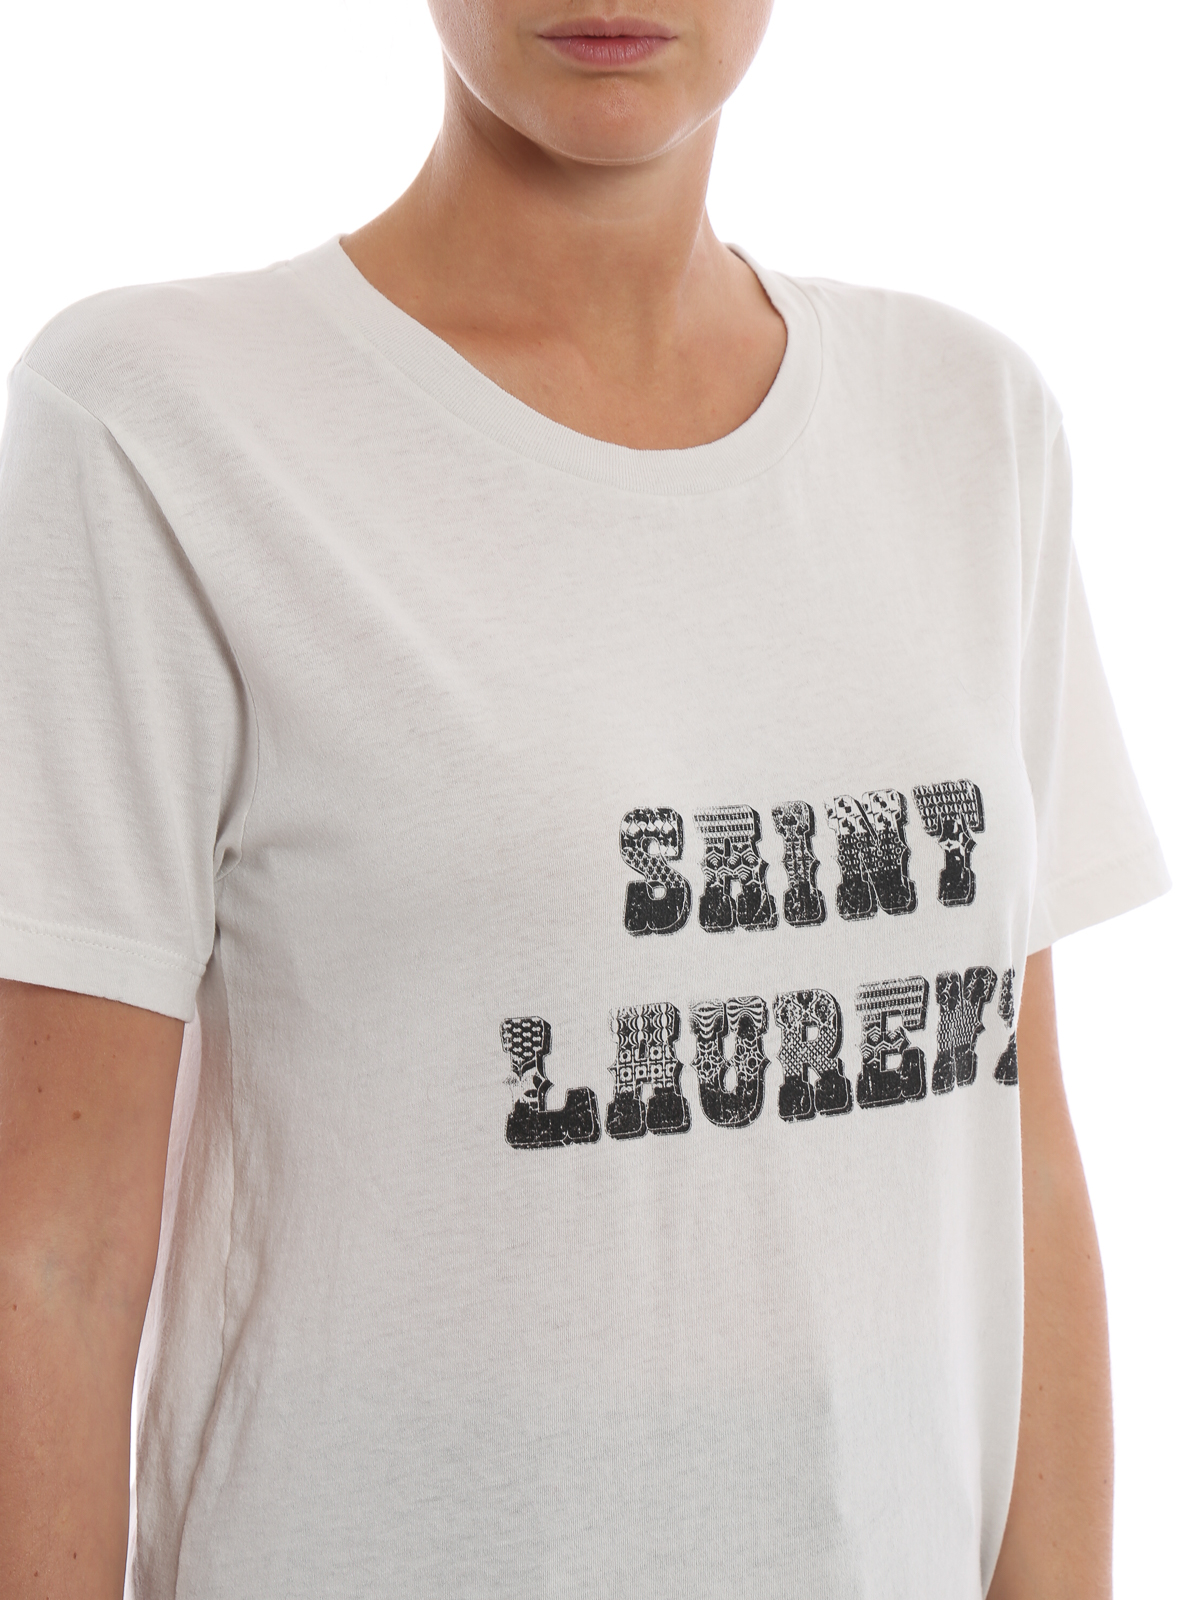 Tシャツ Saint Laurent - Tシャツ - 白 - 537608YB2XS9766 | iKRIX.com